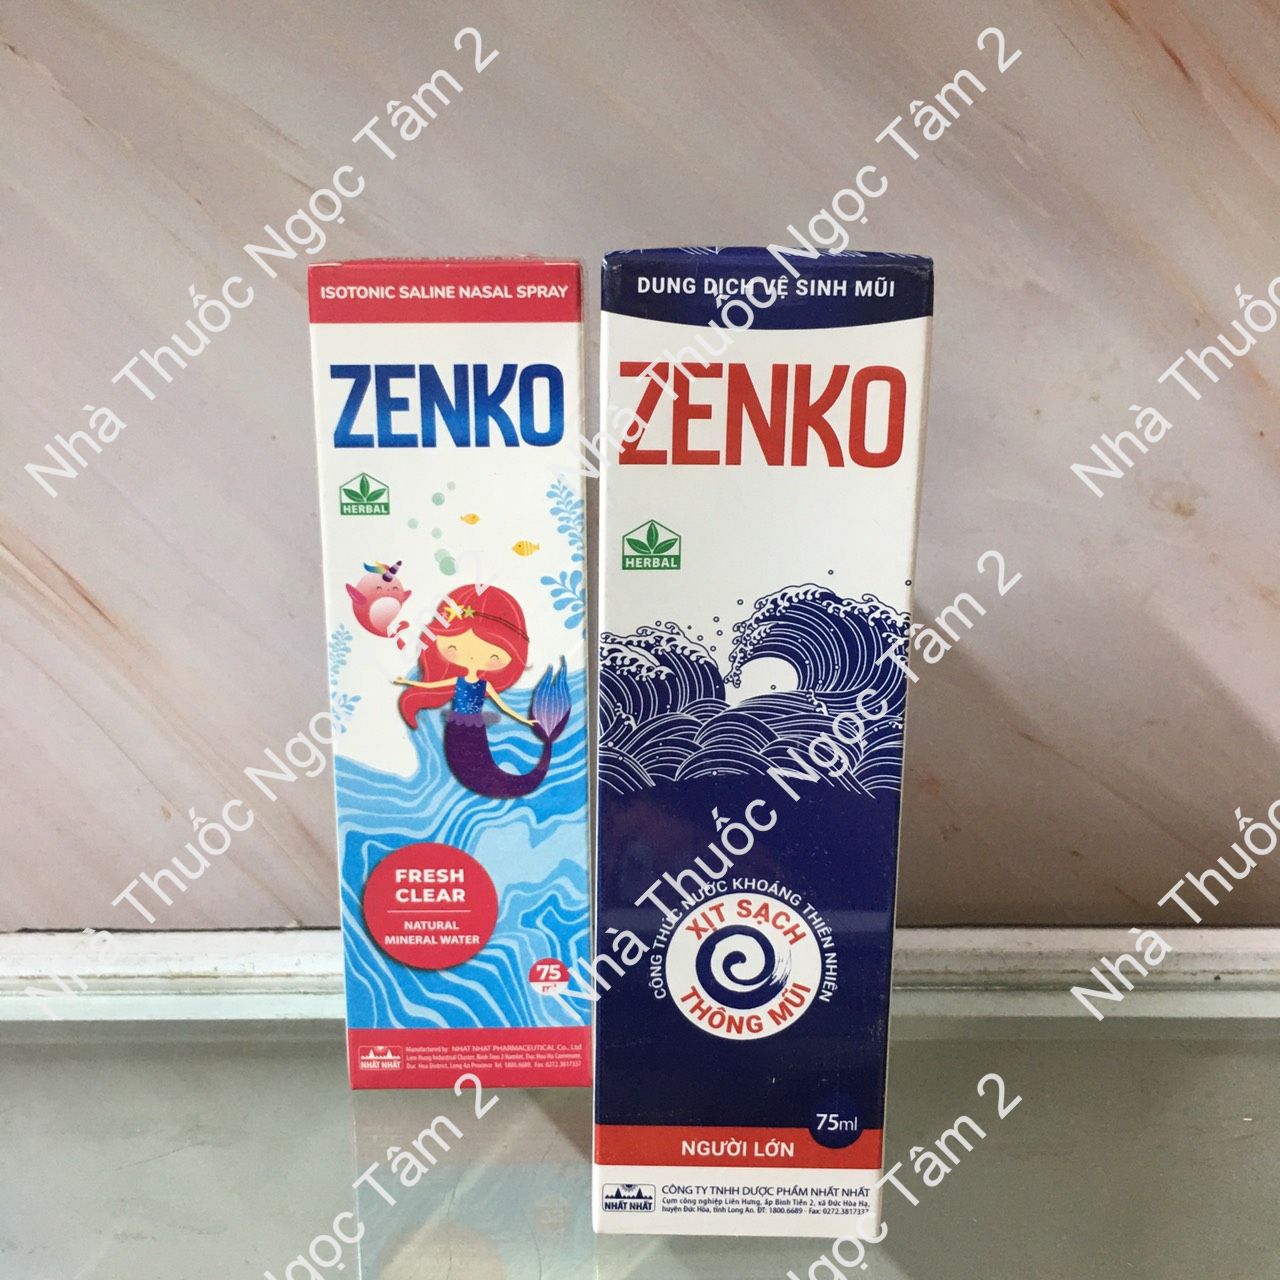 Dung dịch xịt vệ sinh mũi Zenko - Bảo vệ mũi, ngừa khô mũi, nghẹt, sổ mũi